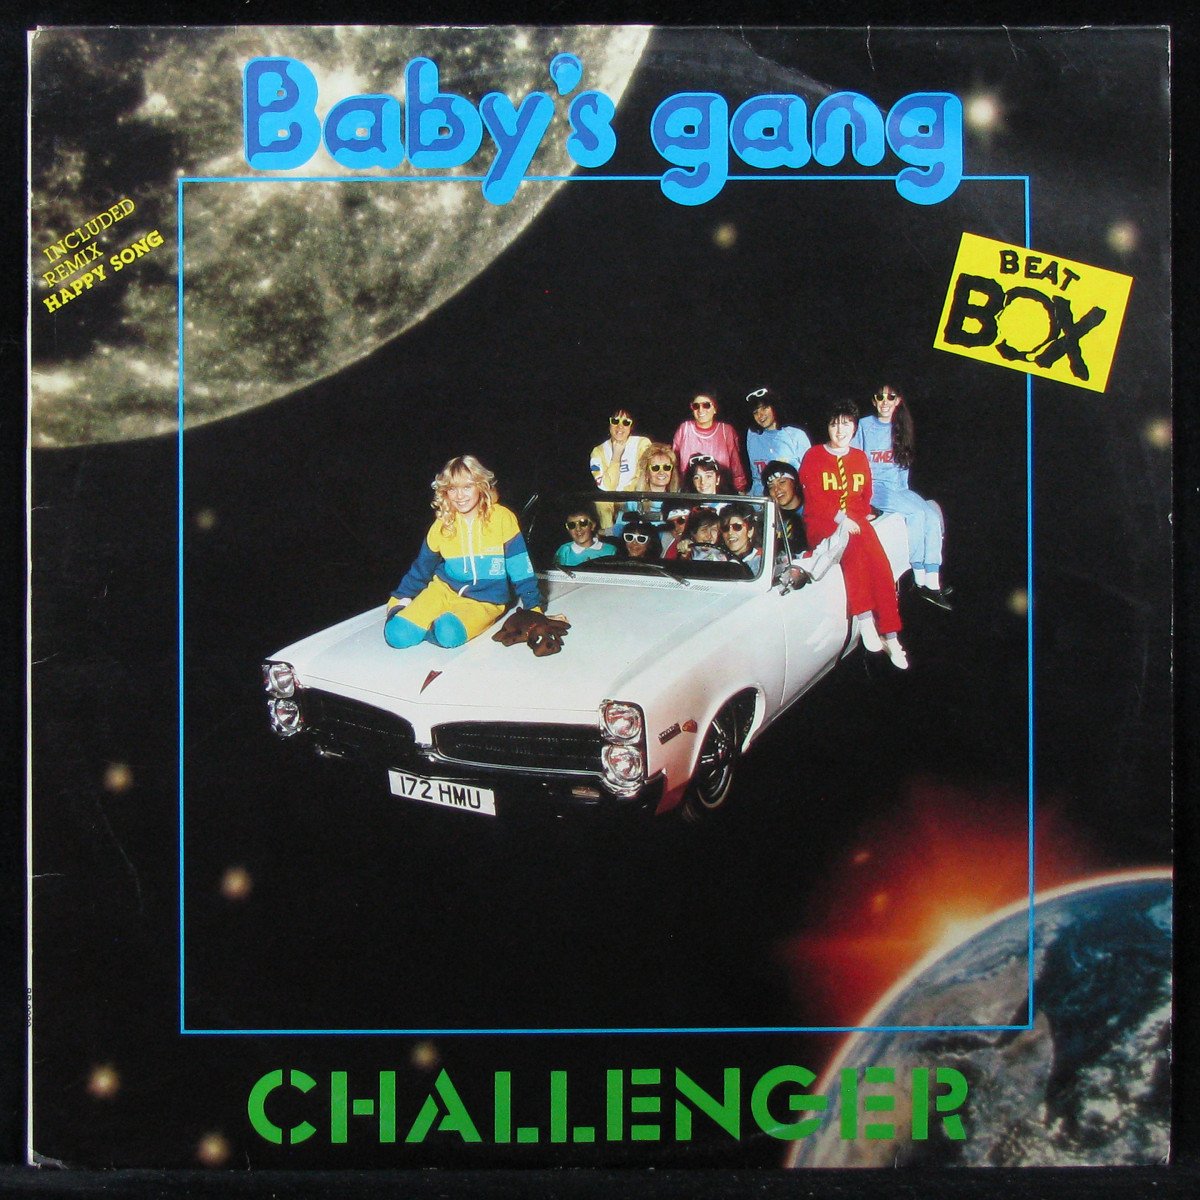 Babys gang Challenger винил. Baby's gang Challenger 1985. 17-Baby's gang - Challenger. Baby s gang пластинка. Gang challenger